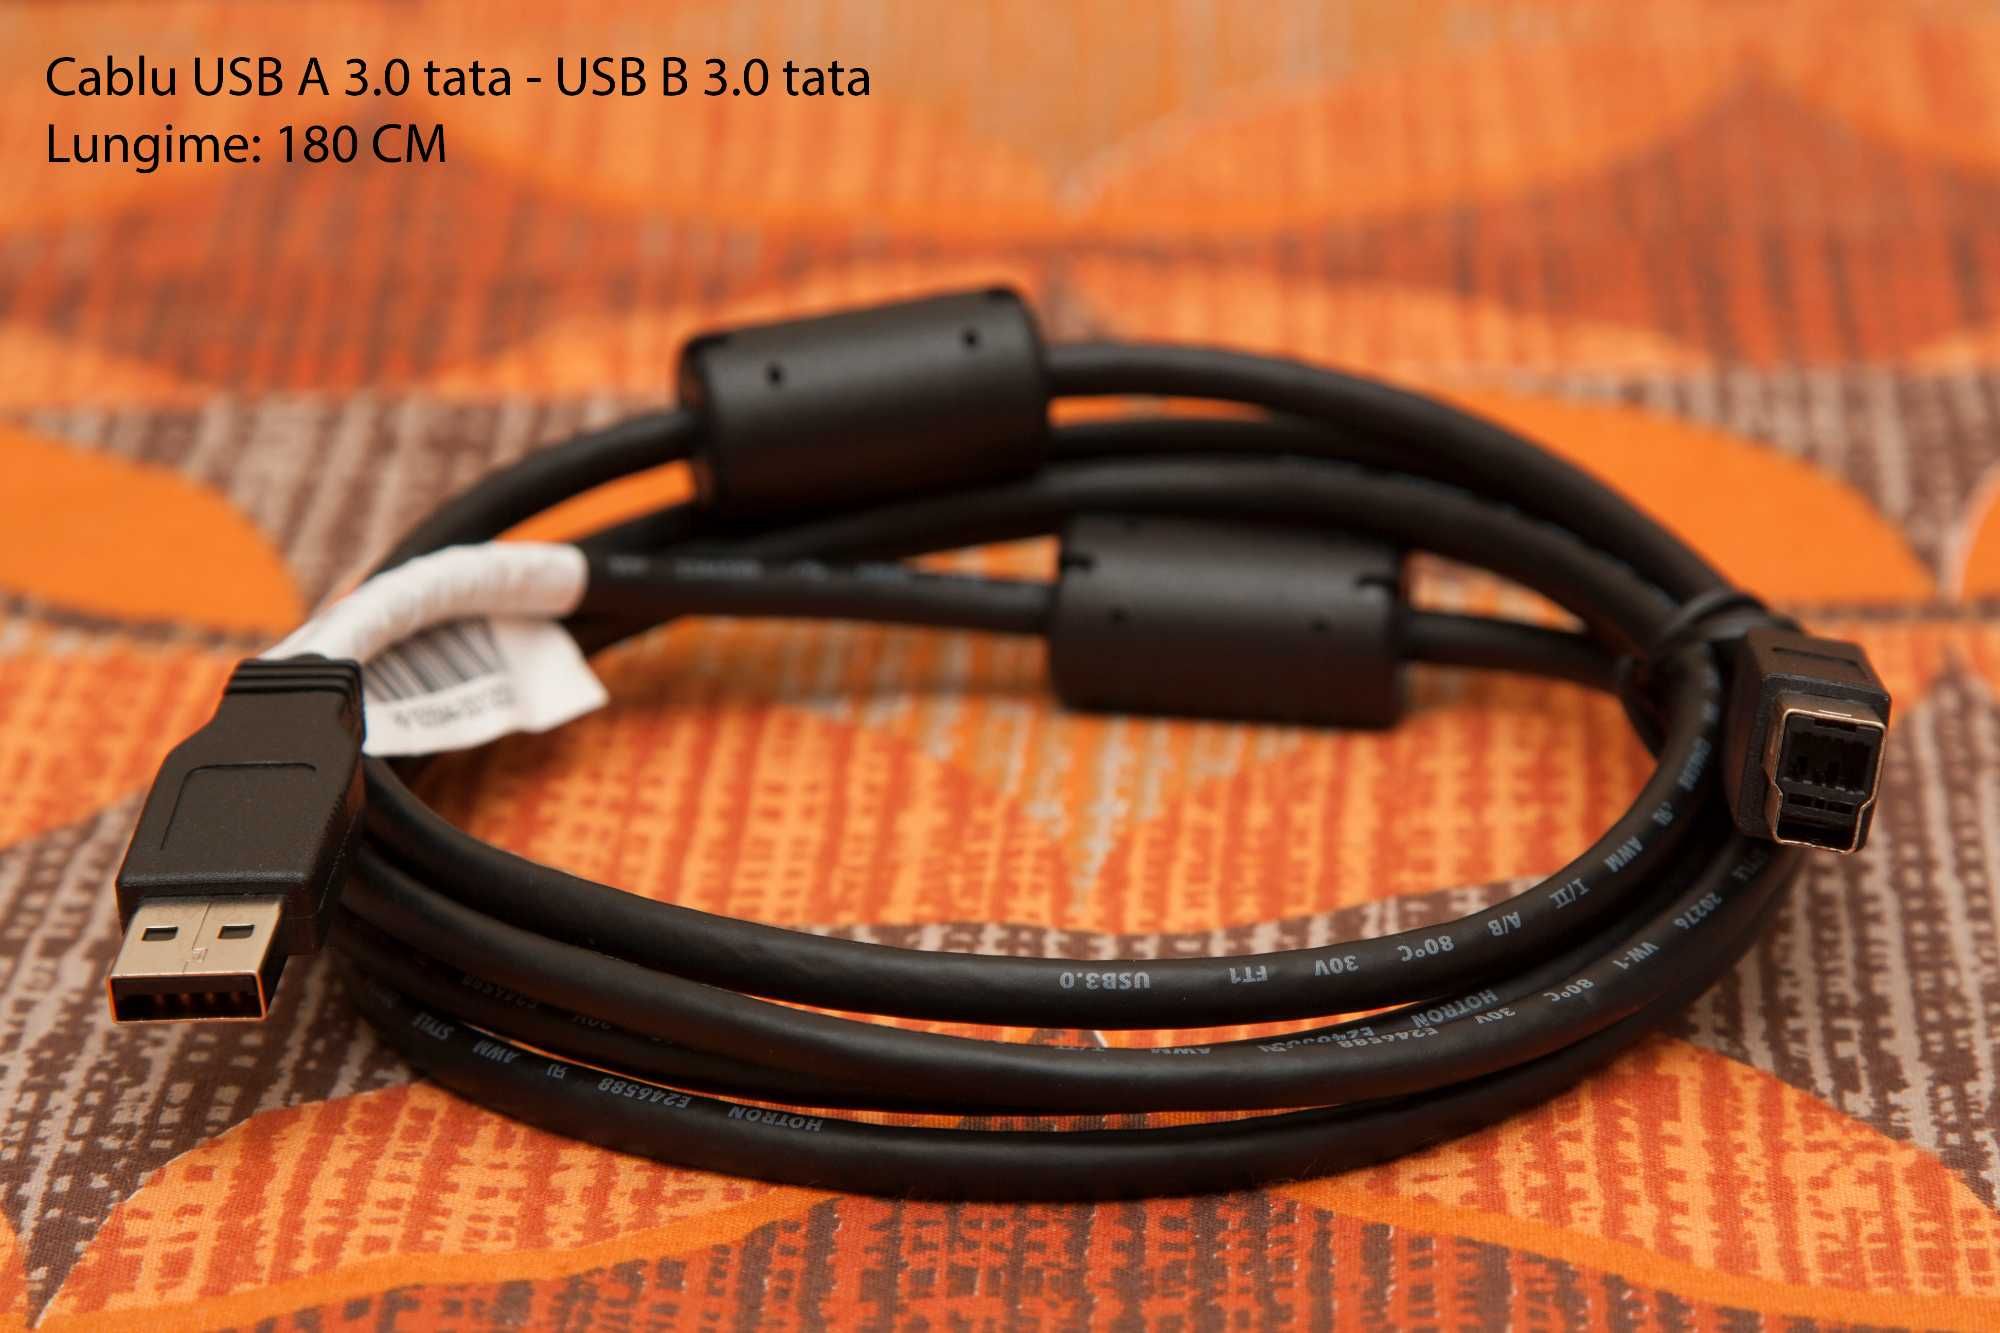 Cablu USB A 3.0 tata - USB B 3.0 tata